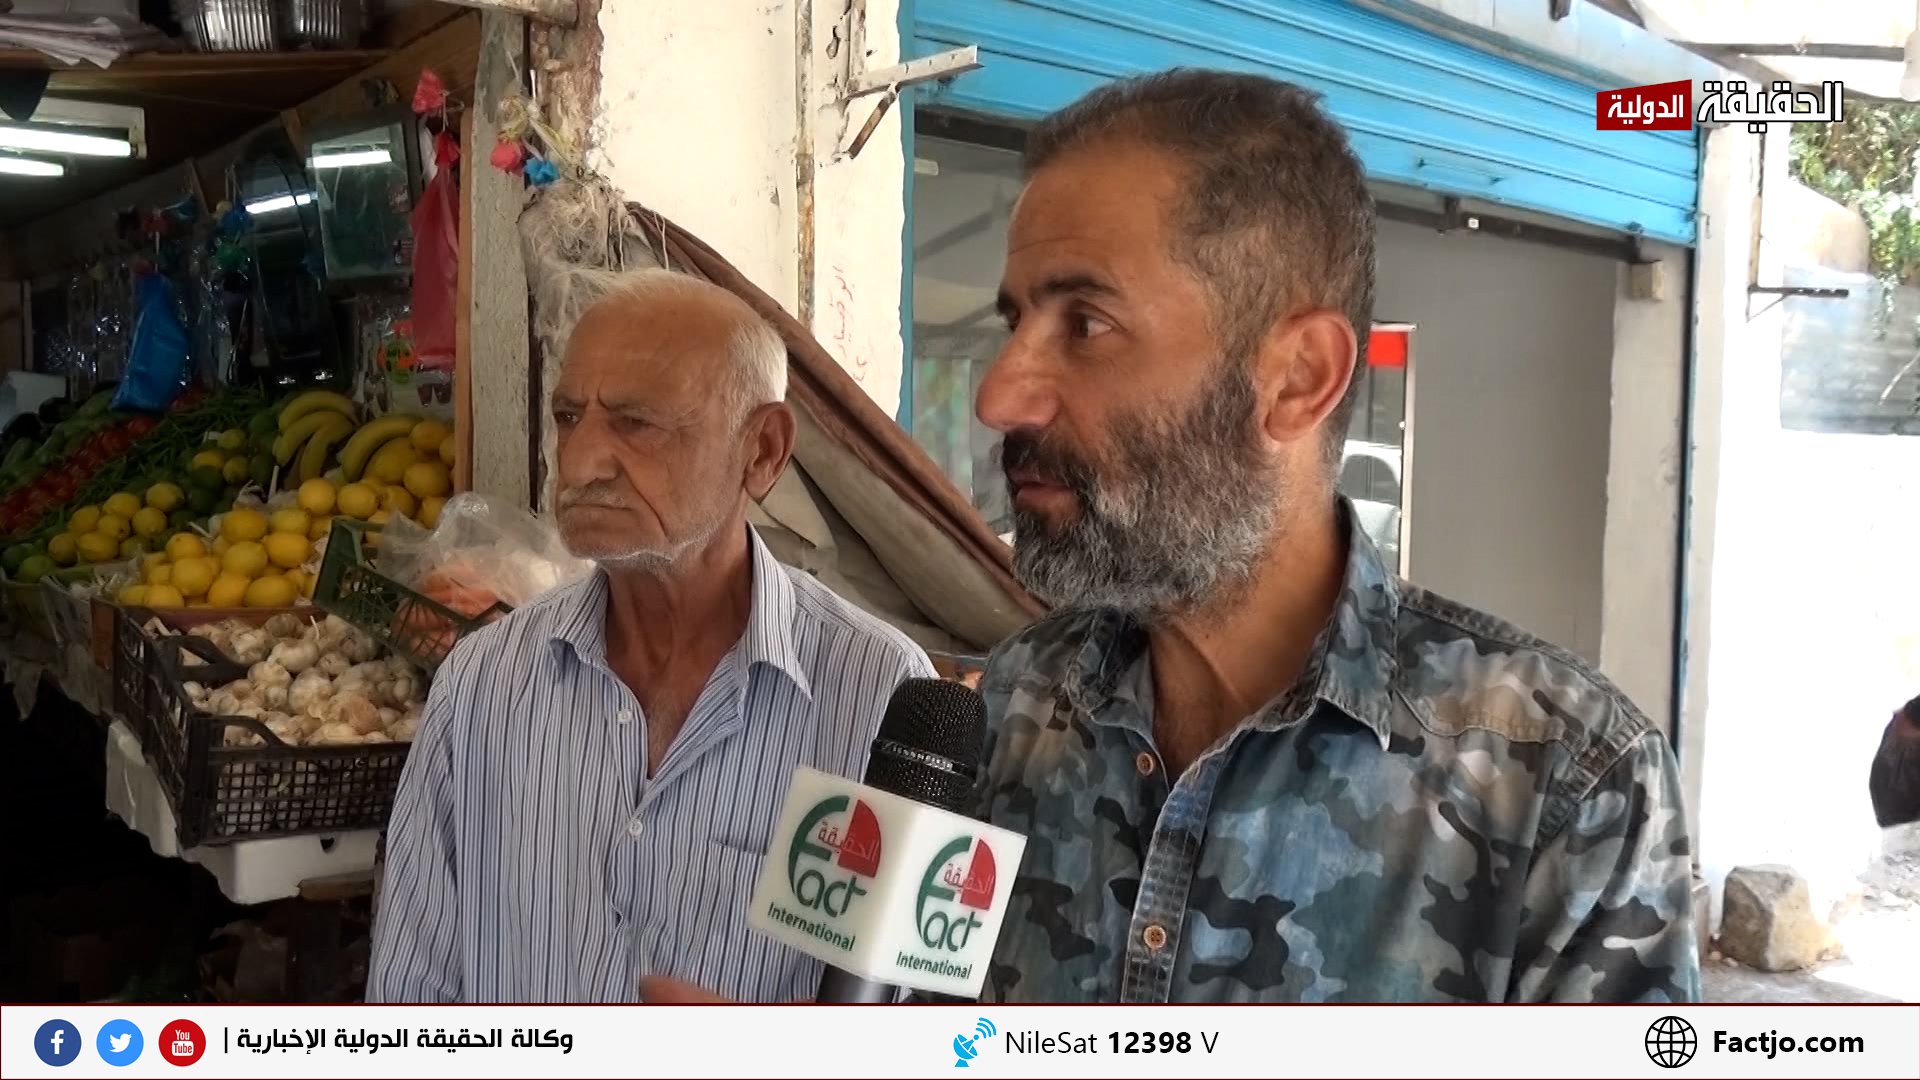 الأردنيون يرحبون بالعودة الطوعية للاجئين السوريين إلى بلادهم.. تقرير تلفزيوني